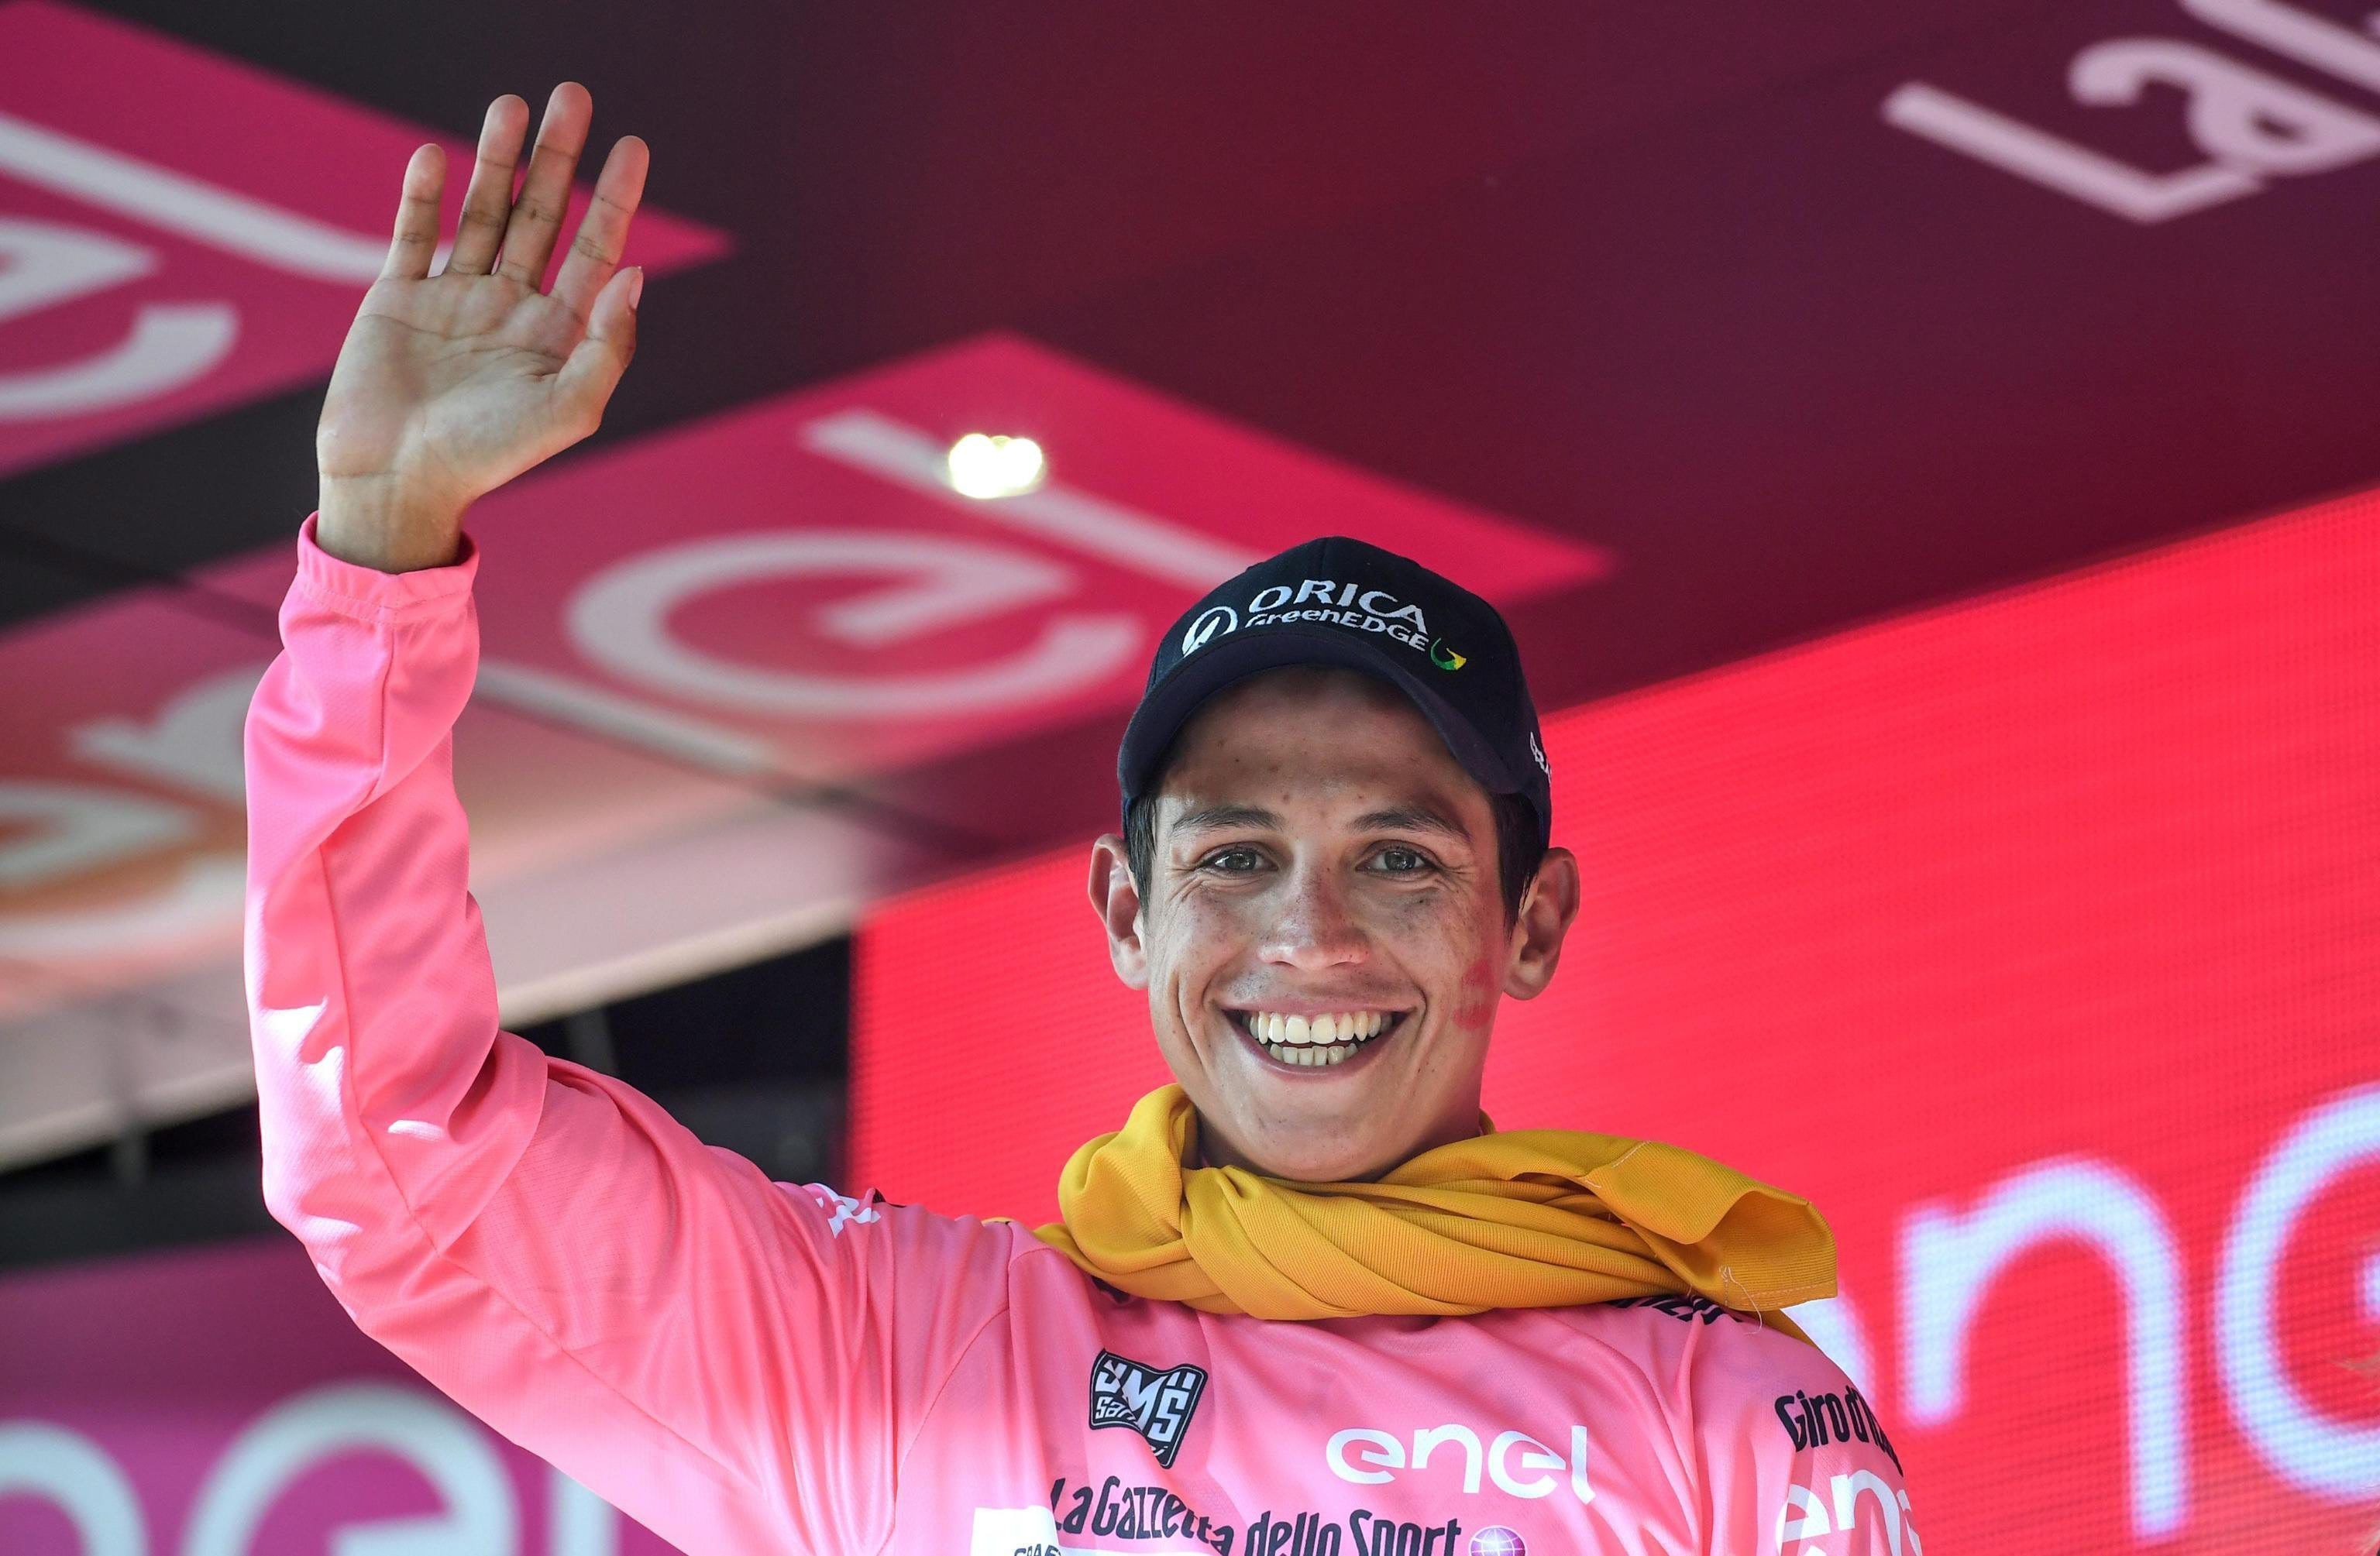 Esteban Chaves es el nuevo líder del Giro